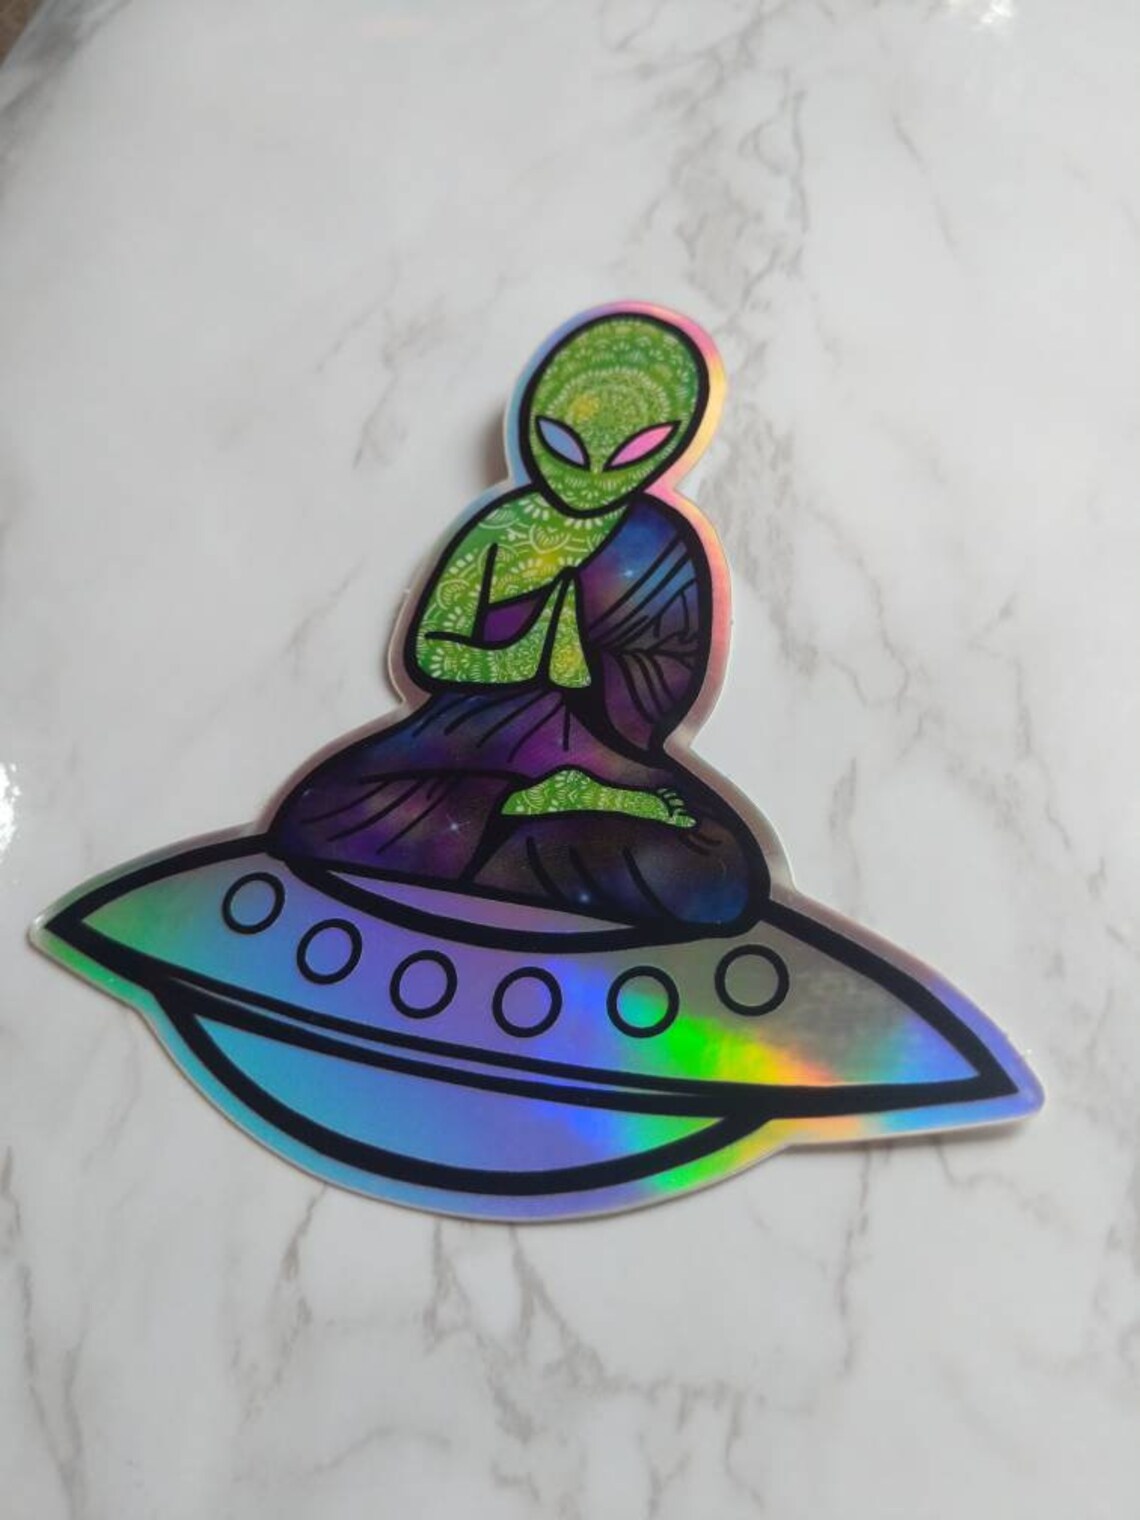 Holographic Sticker/ Alien Hologram/ Spaceship Sticker/ Vinyl | Etsy